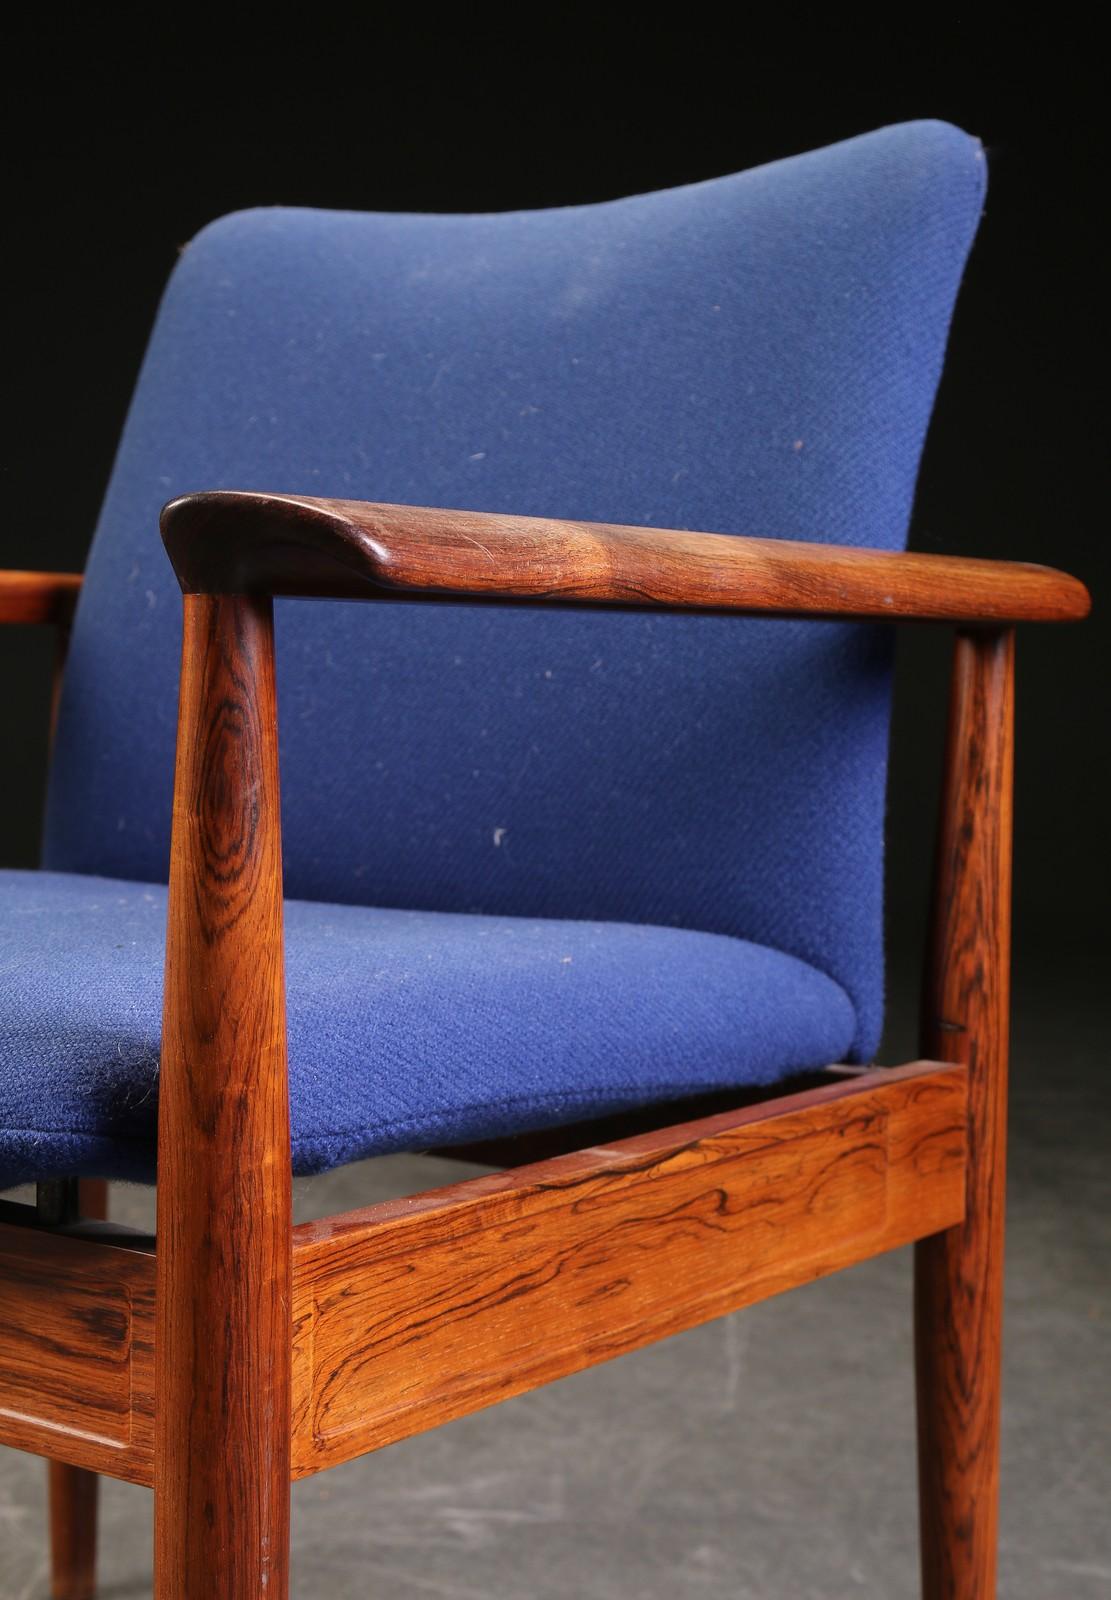 Finn Juhls, chaise de bureau ou fauteuil diplomate avec structure en bois massif, modèle 209. Conçue en 1963. Produit par France & Son.
Mesures : H. 82 cm, SH. 44 cm, B. 69 cm.
Utilisé mais encore en très bon état, possibilité d'une nouvelle